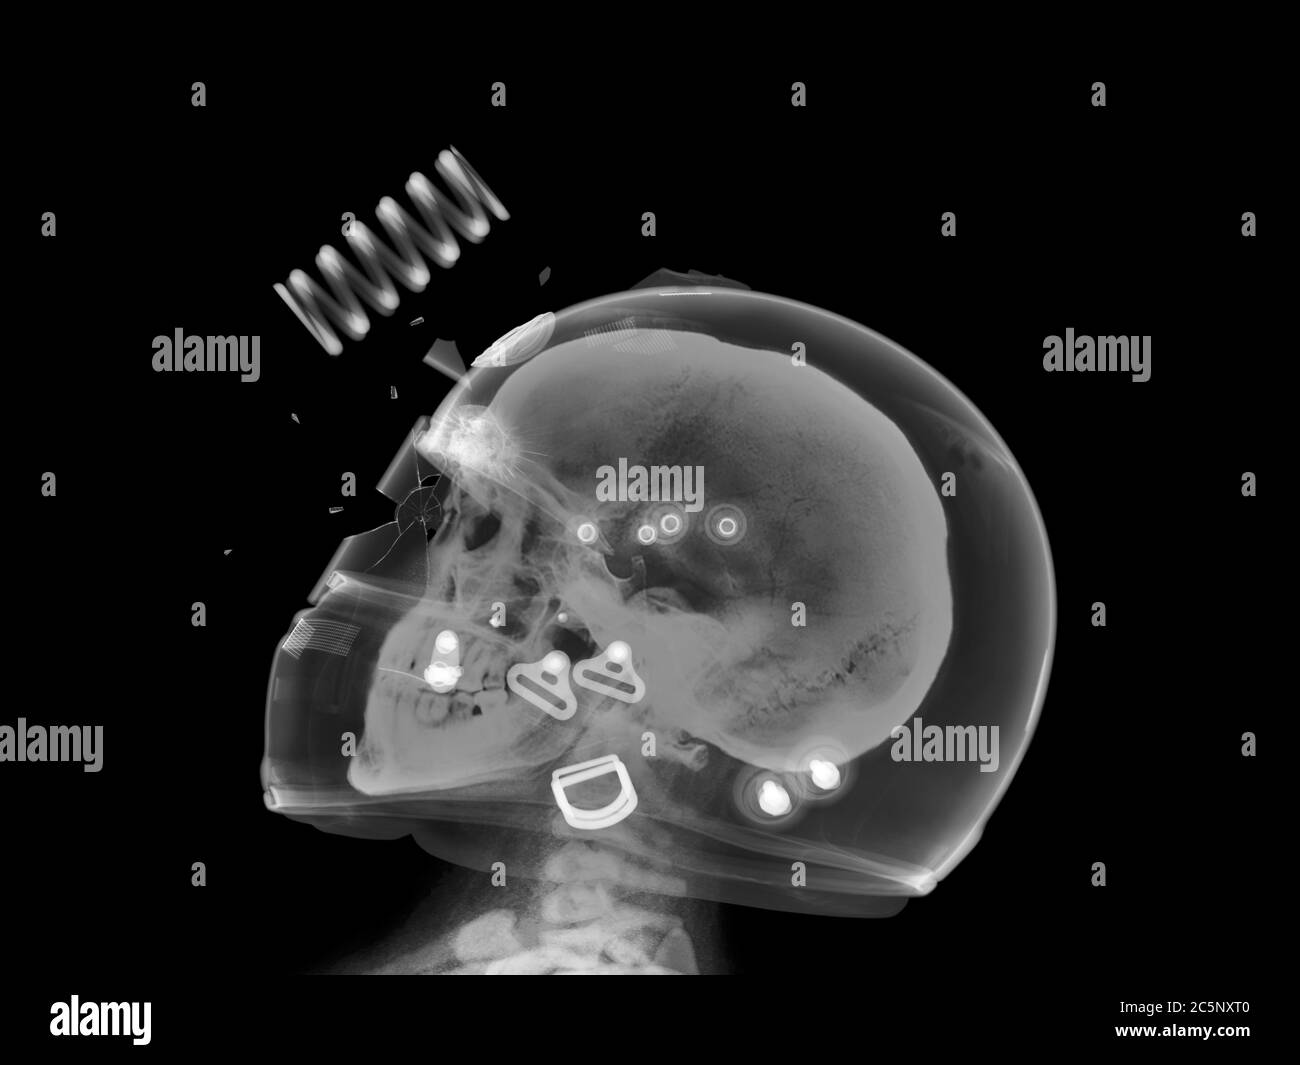 Skull and damaged helmet and visor, X-ray. Stock Photo